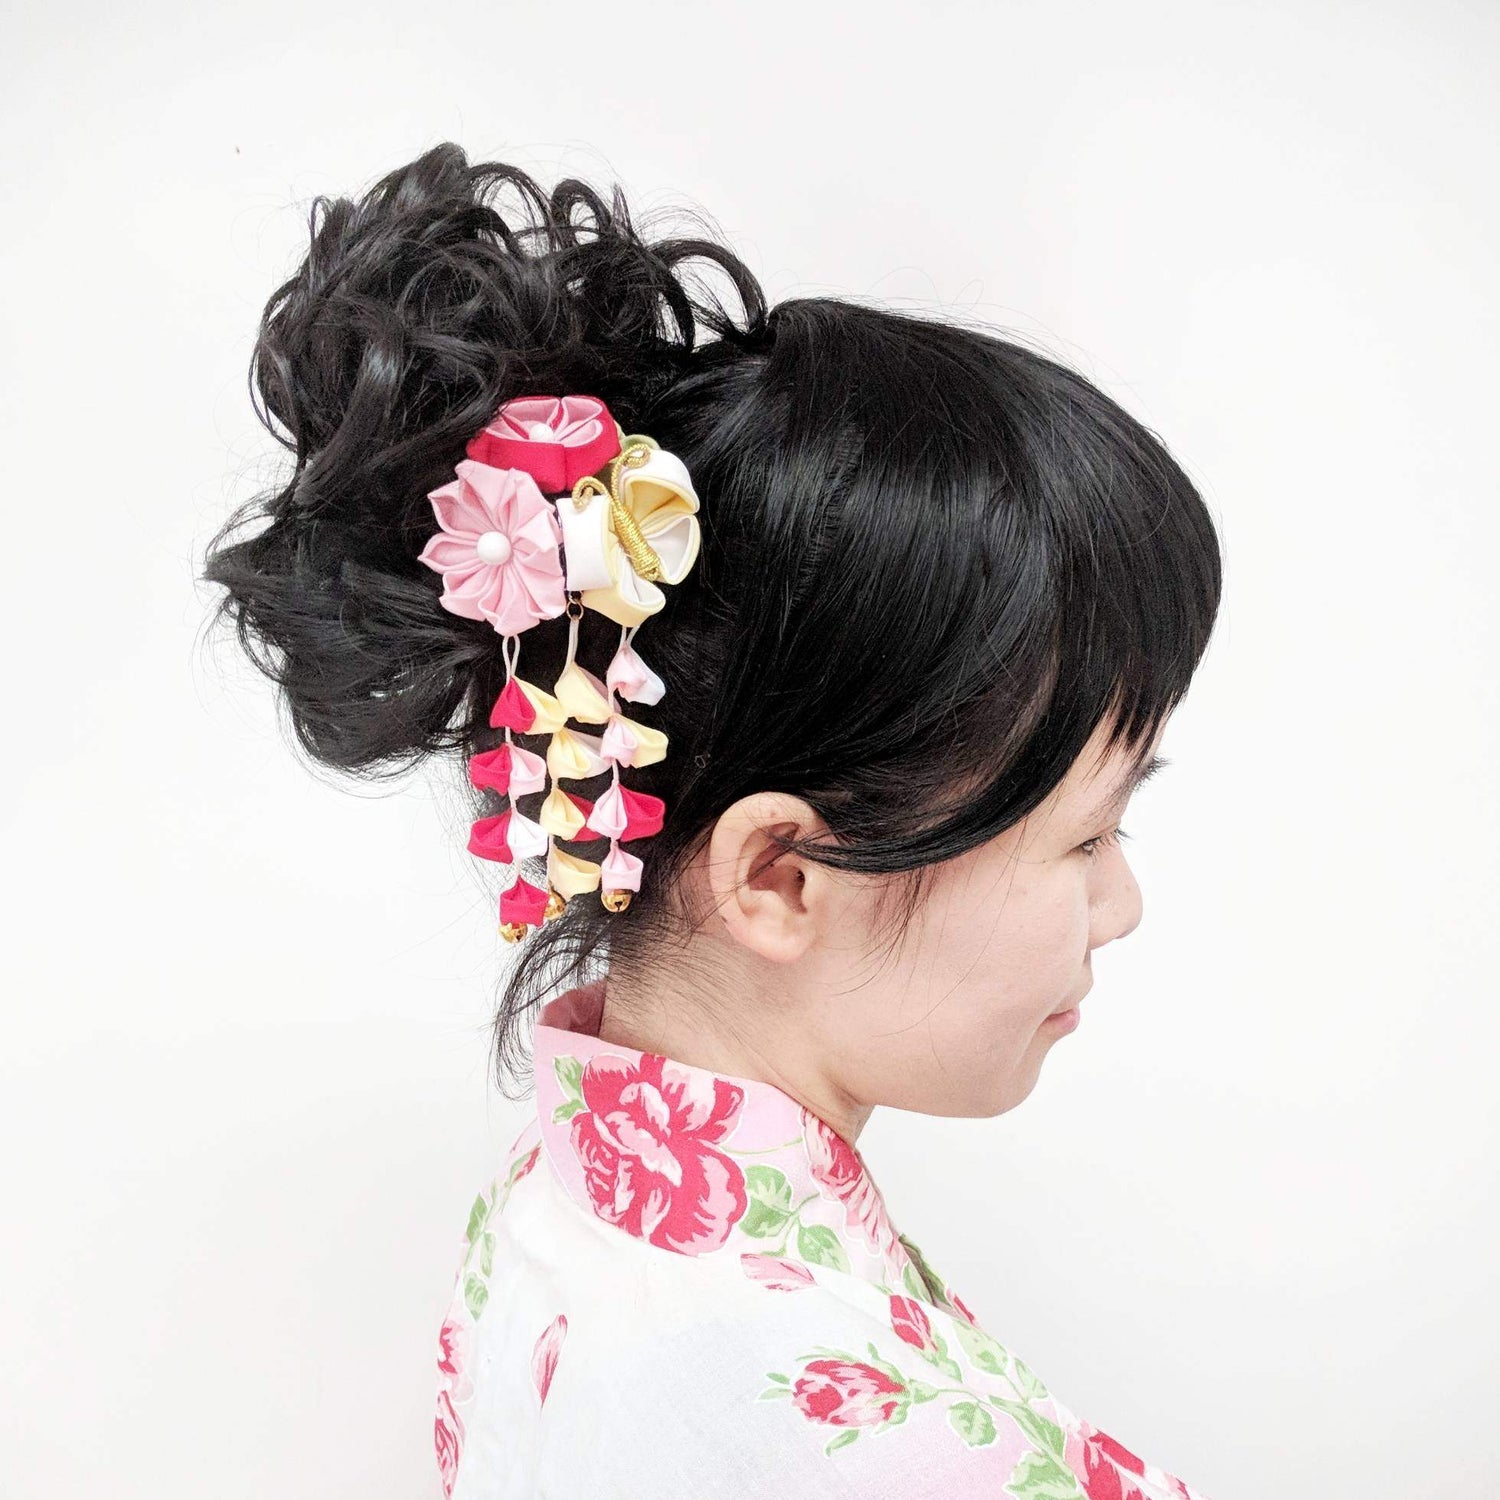 Dancing Butterfly Fabric Dangling Kanzashi Two Leg Hair Pin for Kimono with model